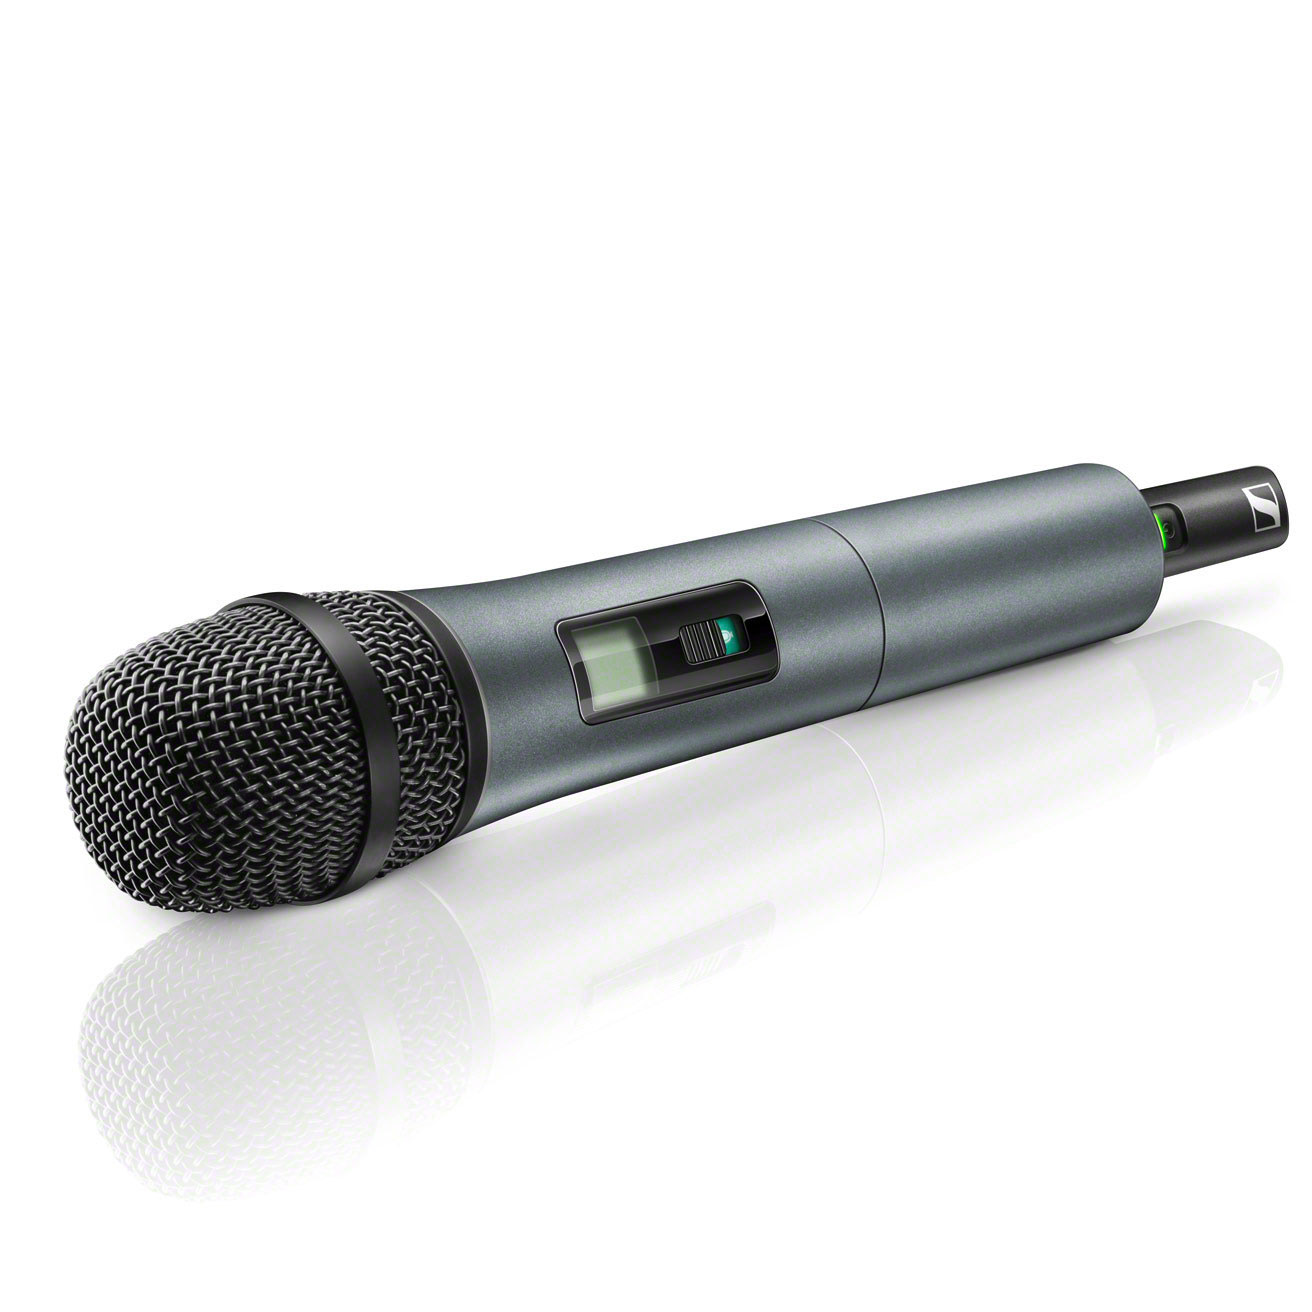 Sennheiser Xsw 2-835-a - - Wireless handheld microphone - Variation 1